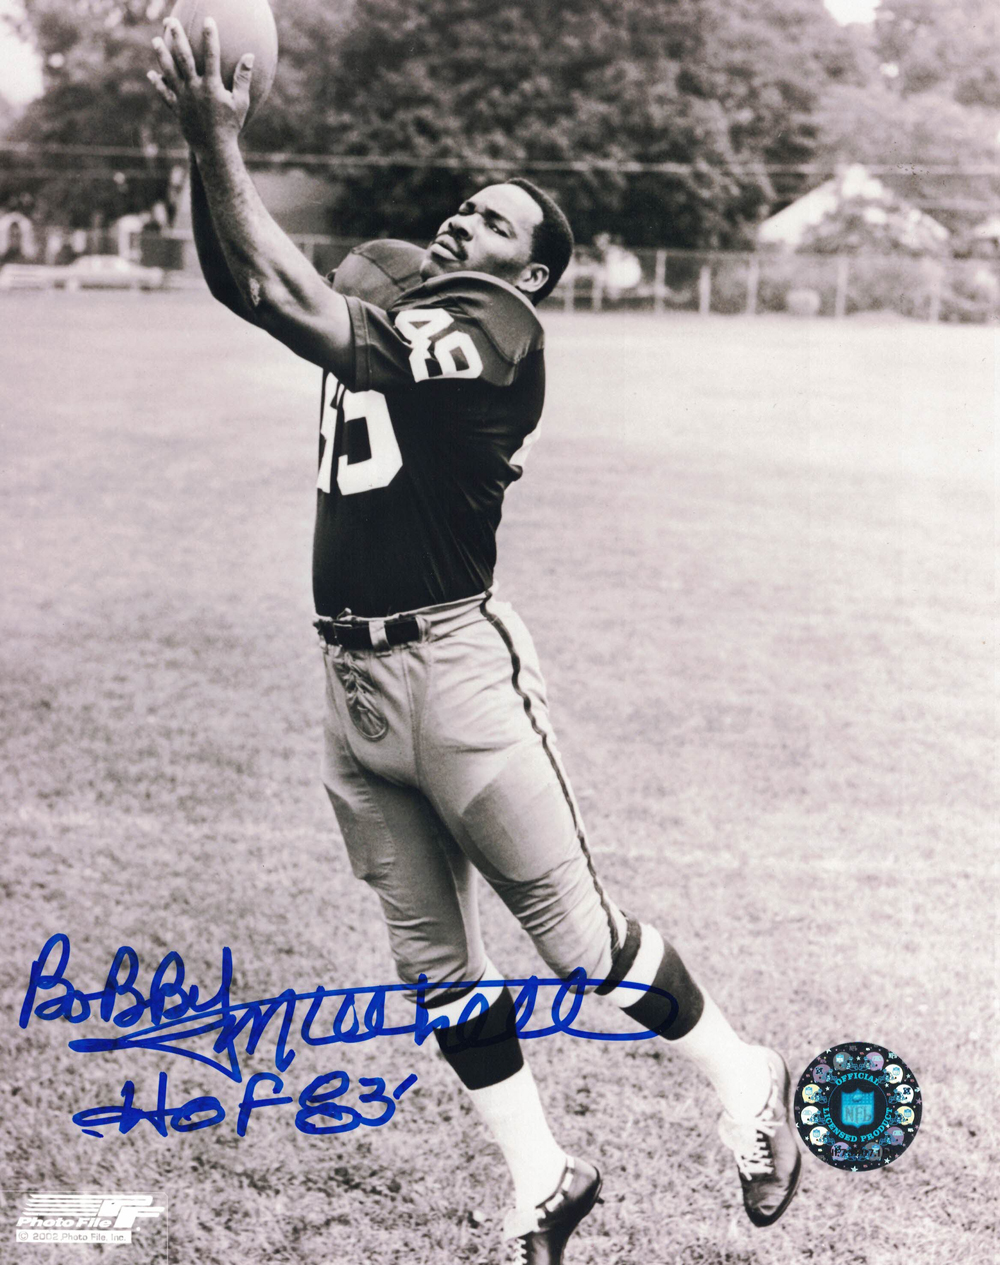 Bobby Mitchell Autographed/Signed Washington Redskins 8x10 Photo 27881